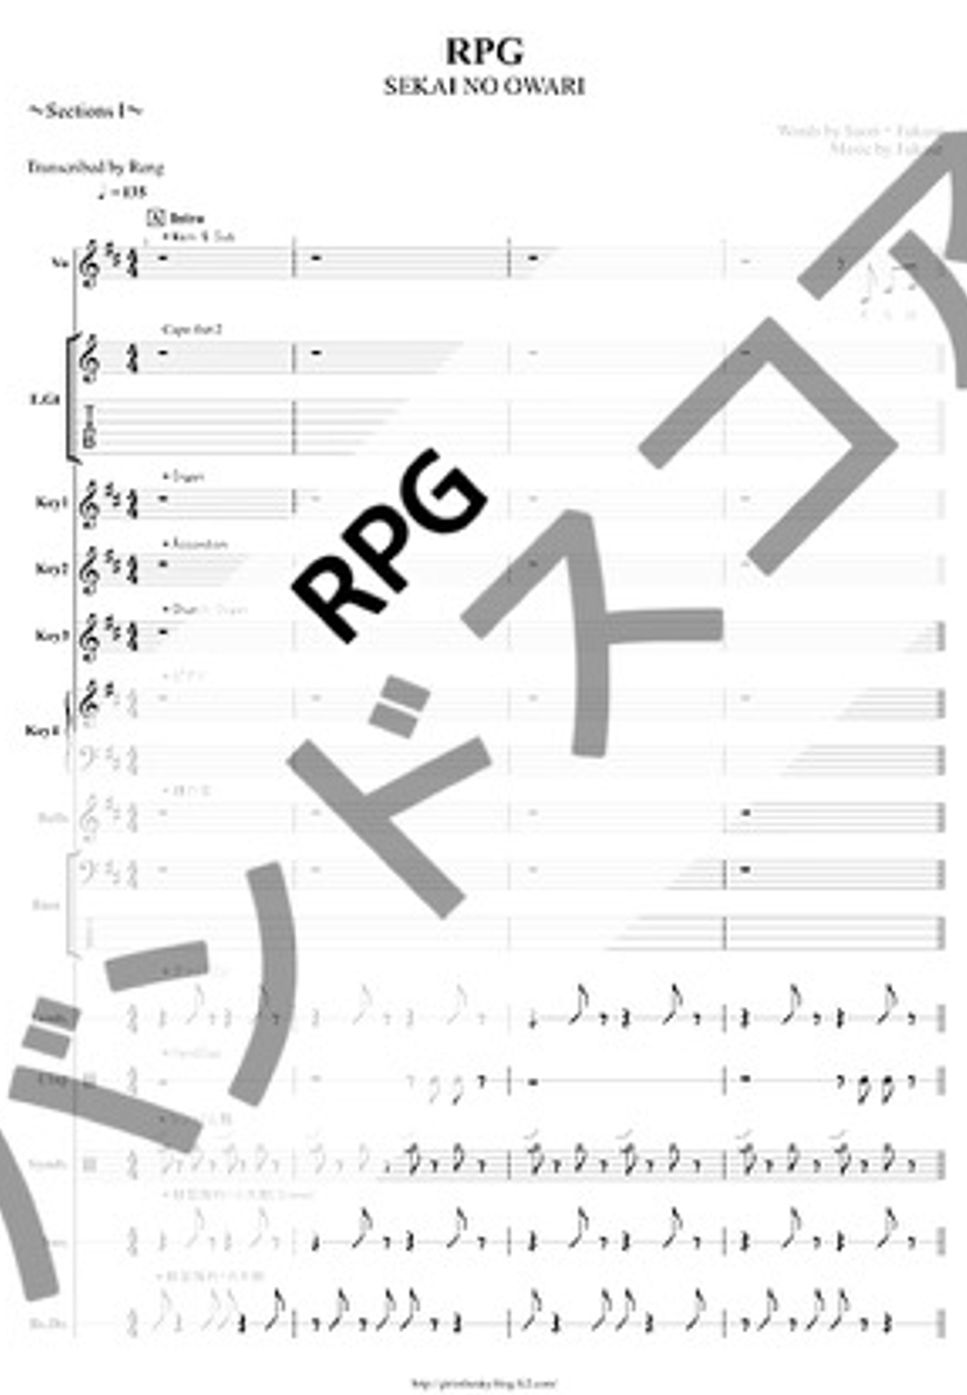 SEKAI NO OWARI - RPG (バンドスコア/歌詞/コード/TAB譜/ドラム譜) by Score by Reng